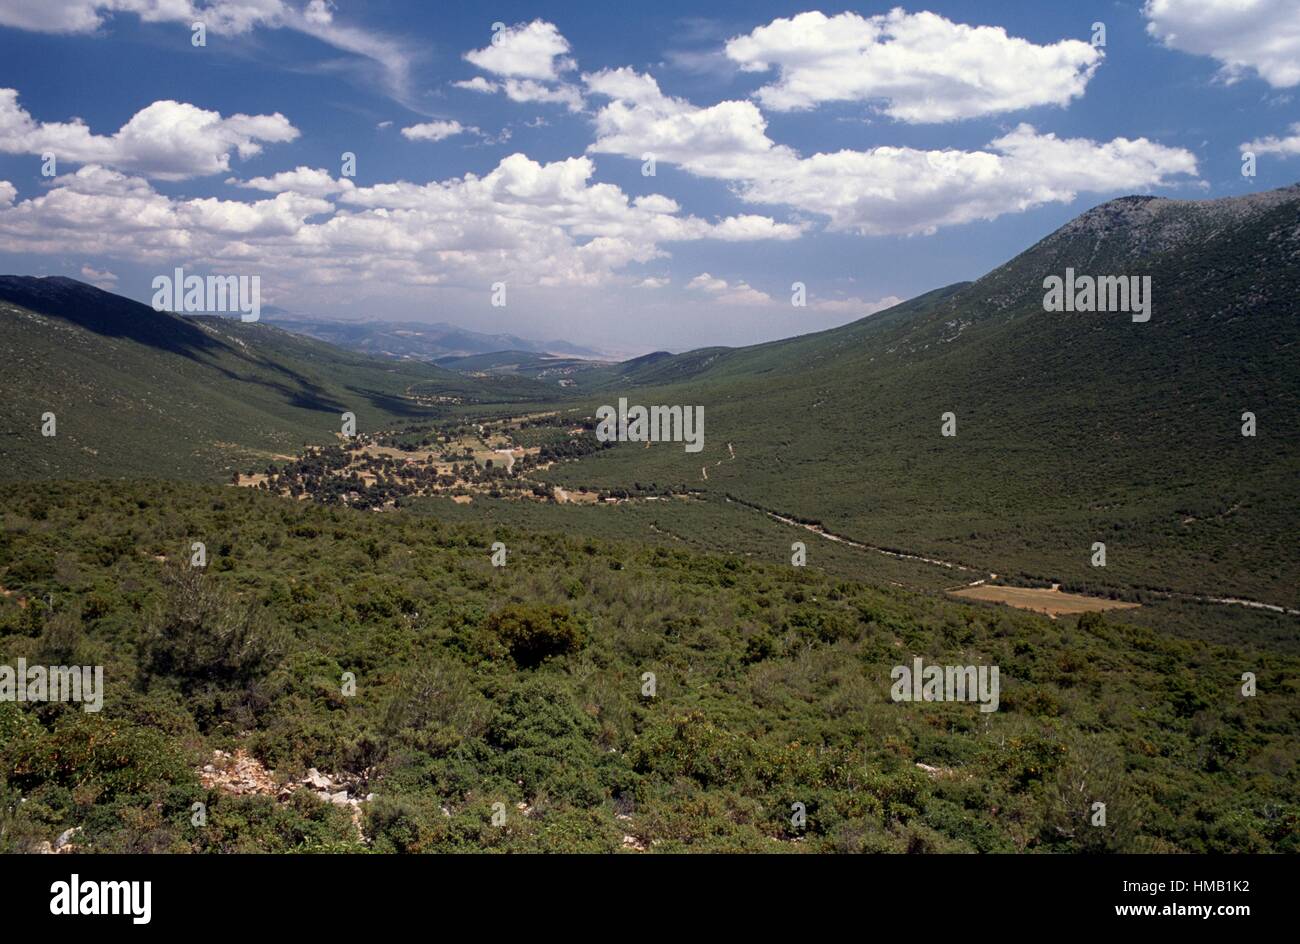 Countryside near Mount Cithaeron, Greece. Stock Photo